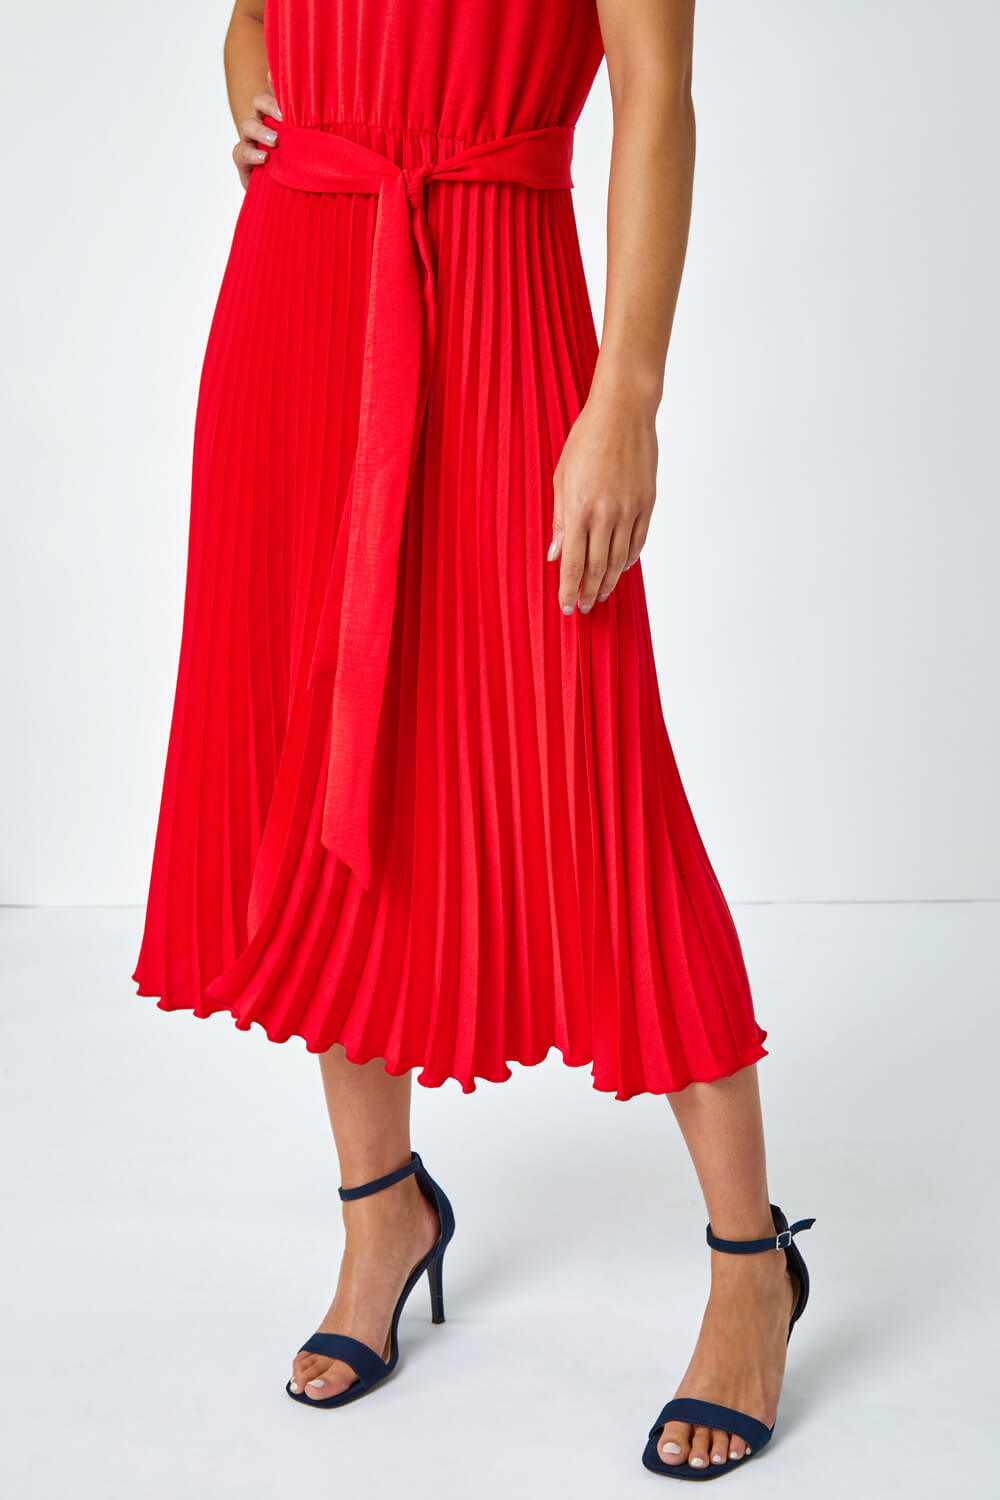 Red Petite Plain Pleated Skirt Midi Dress, Image 5 of 5